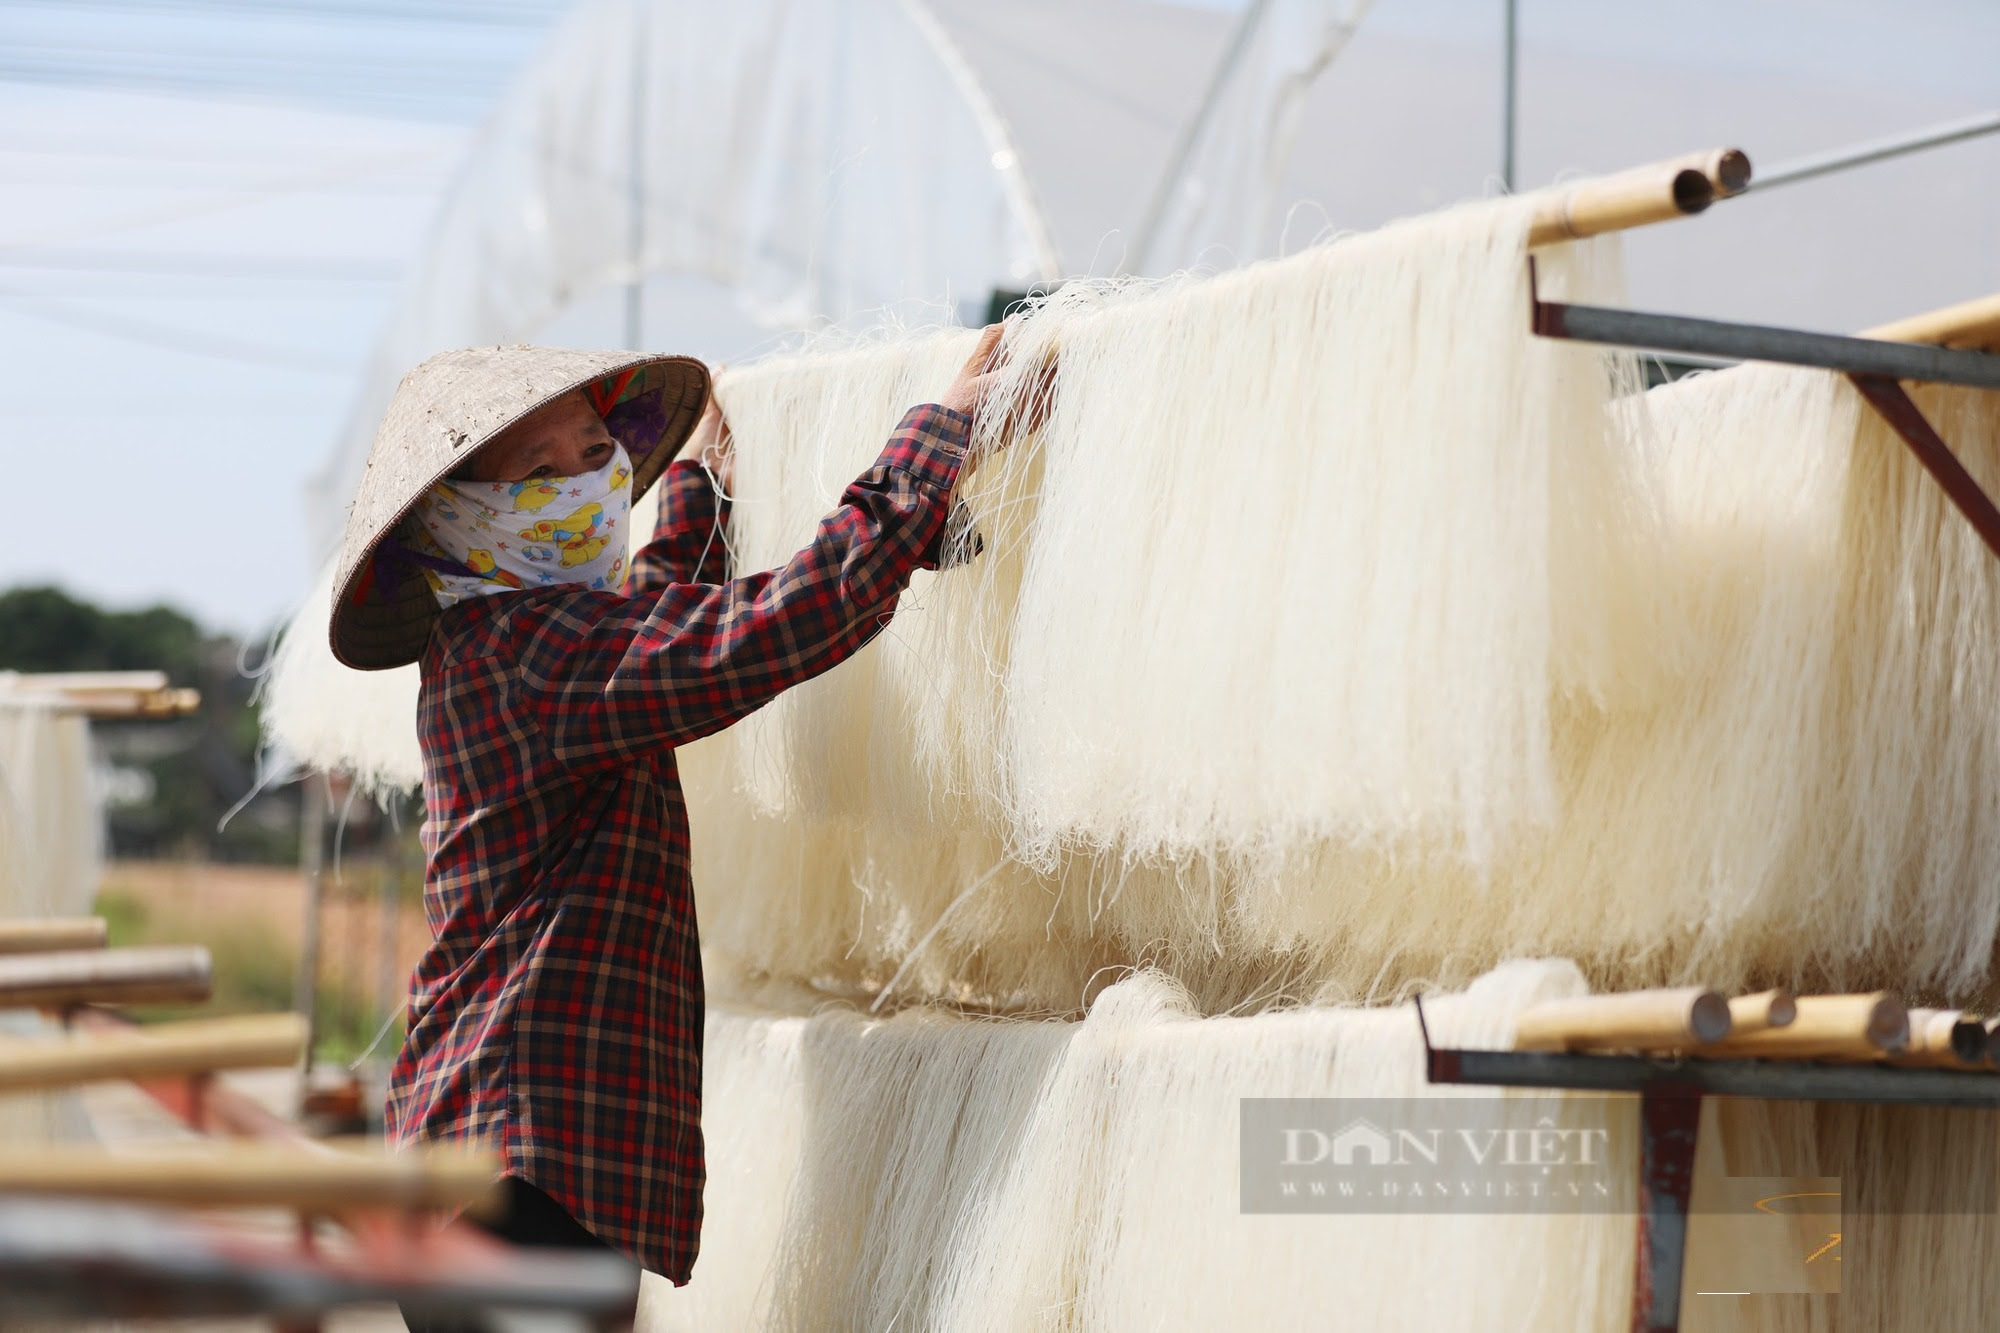 Phú Thọ: Thứ đặc sản từ gạo trước chỉ quanh quẩn ở địa phương, nay tiêu thụ từ Nam ra Bắc - Ảnh 5.